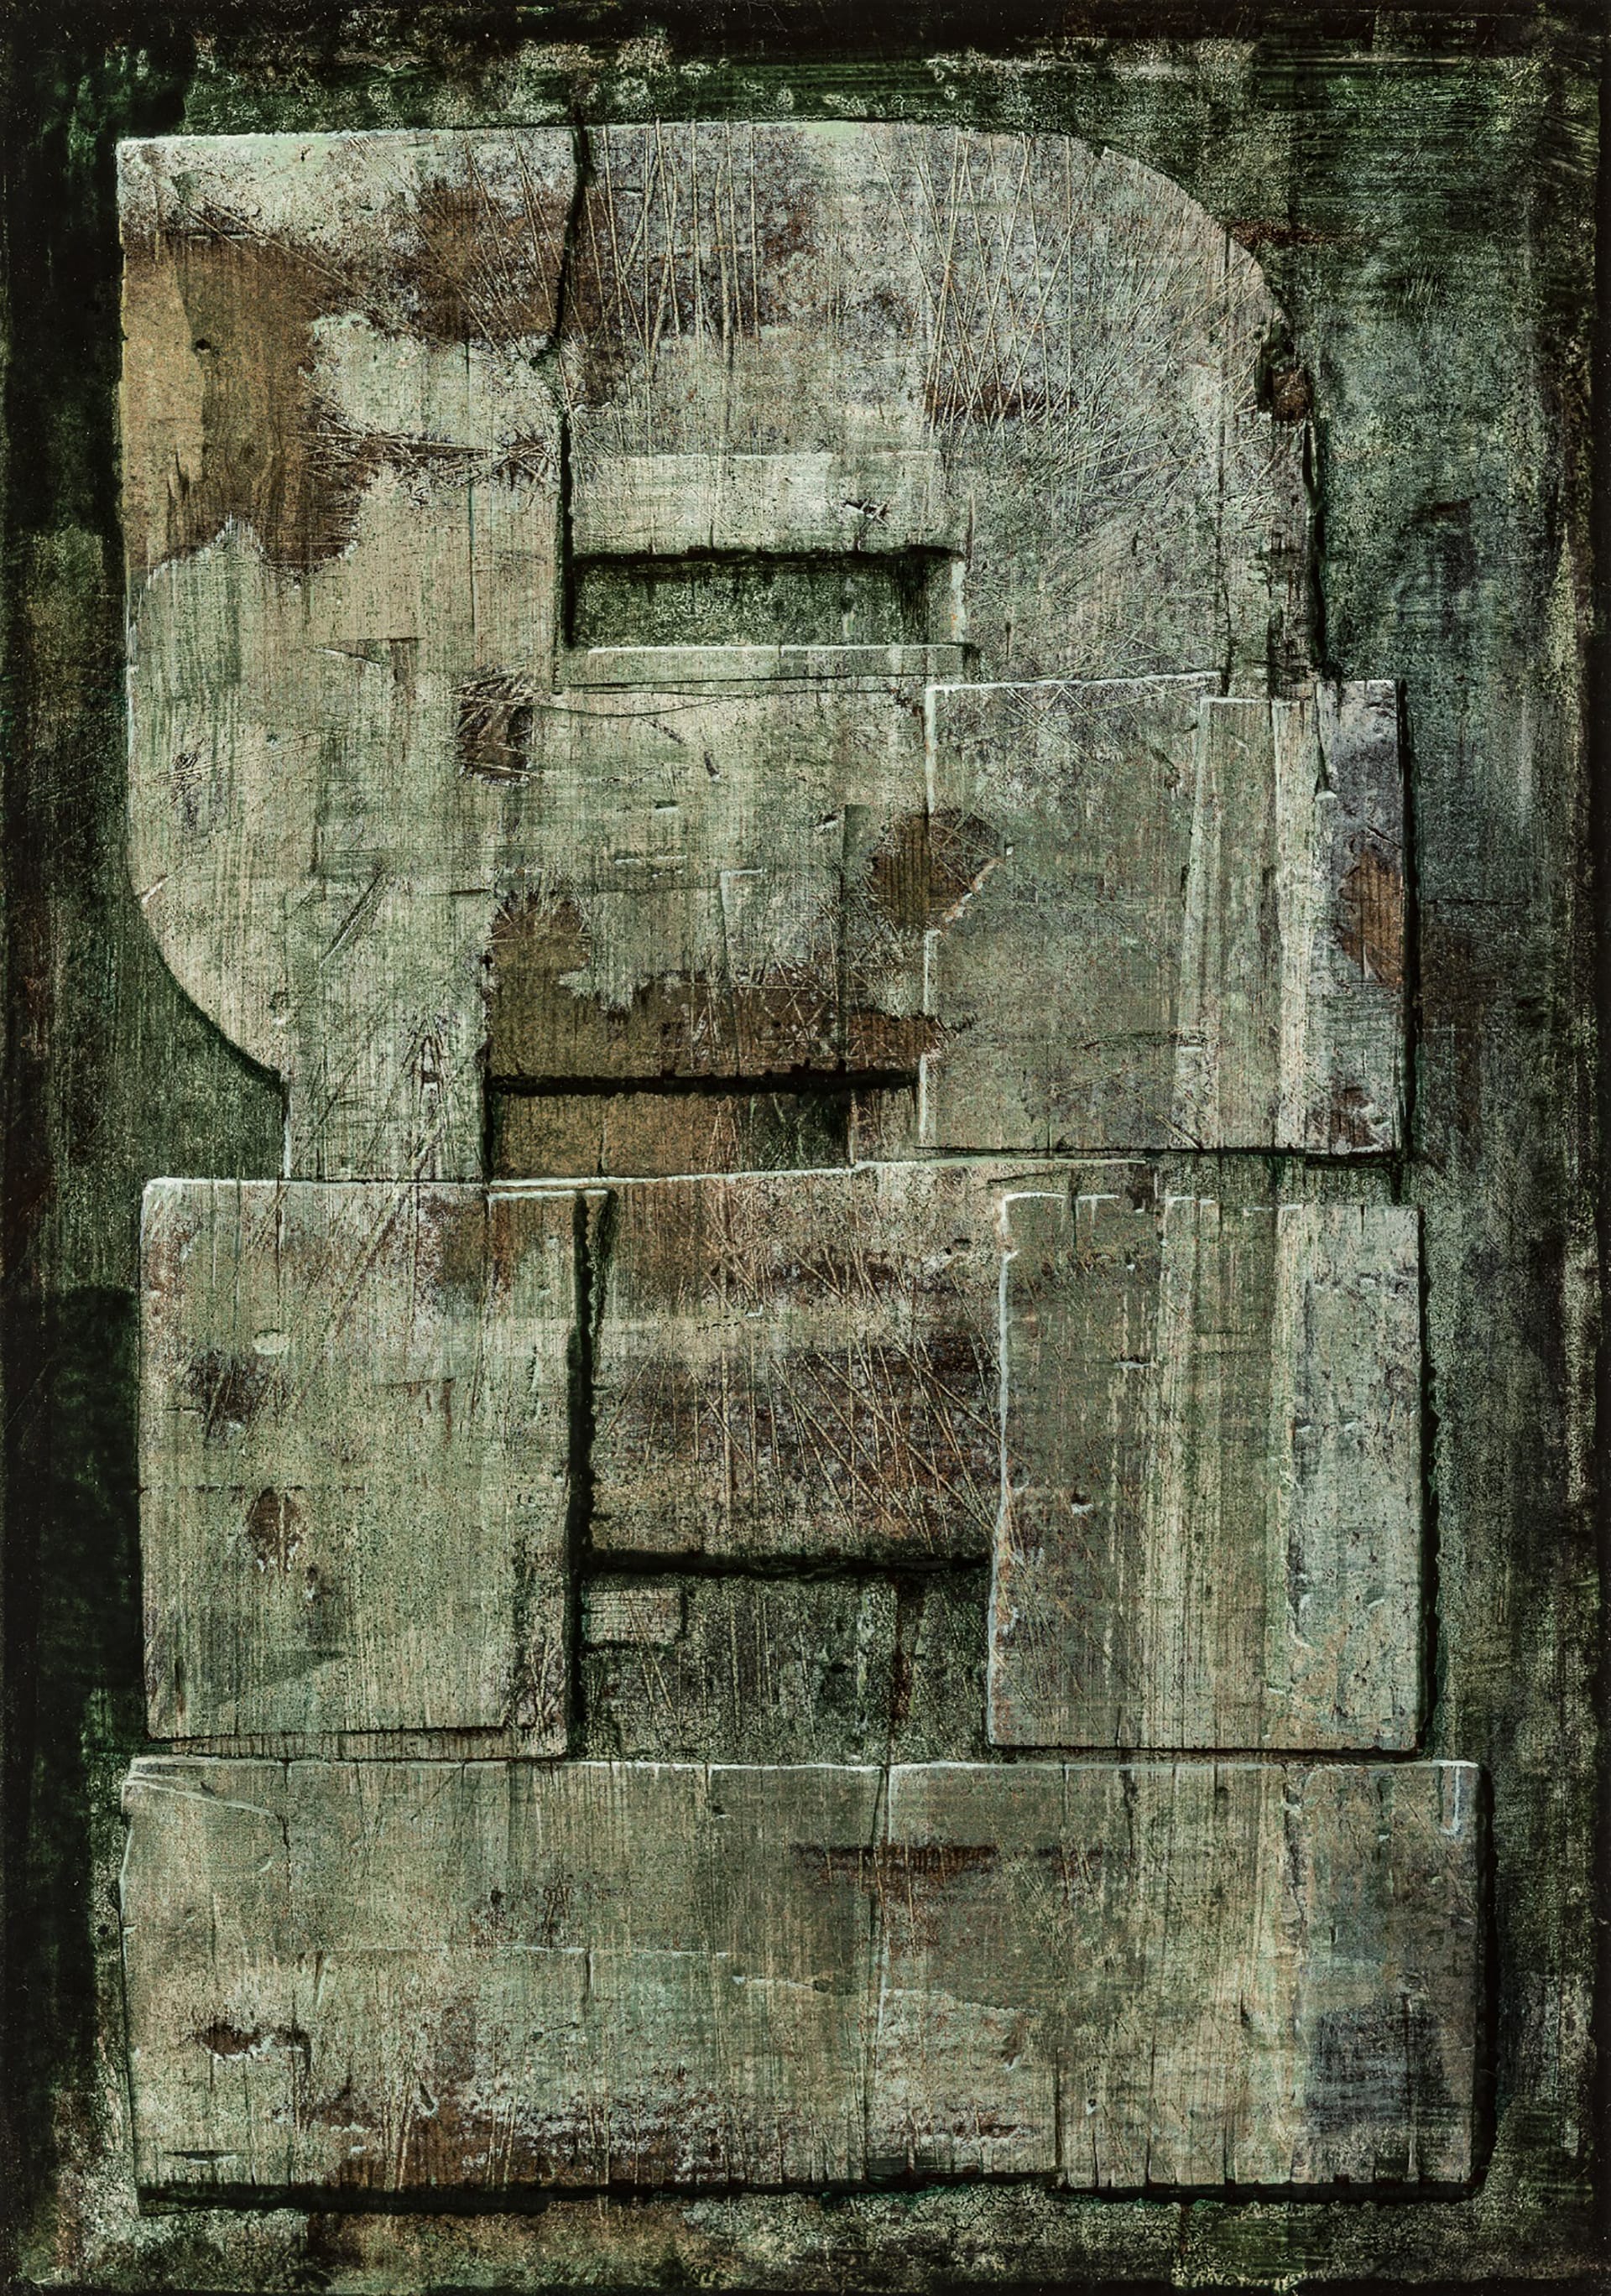 Luigi Pericle "Senza titolo (Matri Dei d.d.d.)", 1978. Tecnica mista su masonite, 42 x 29,5 cm. Collezione privata